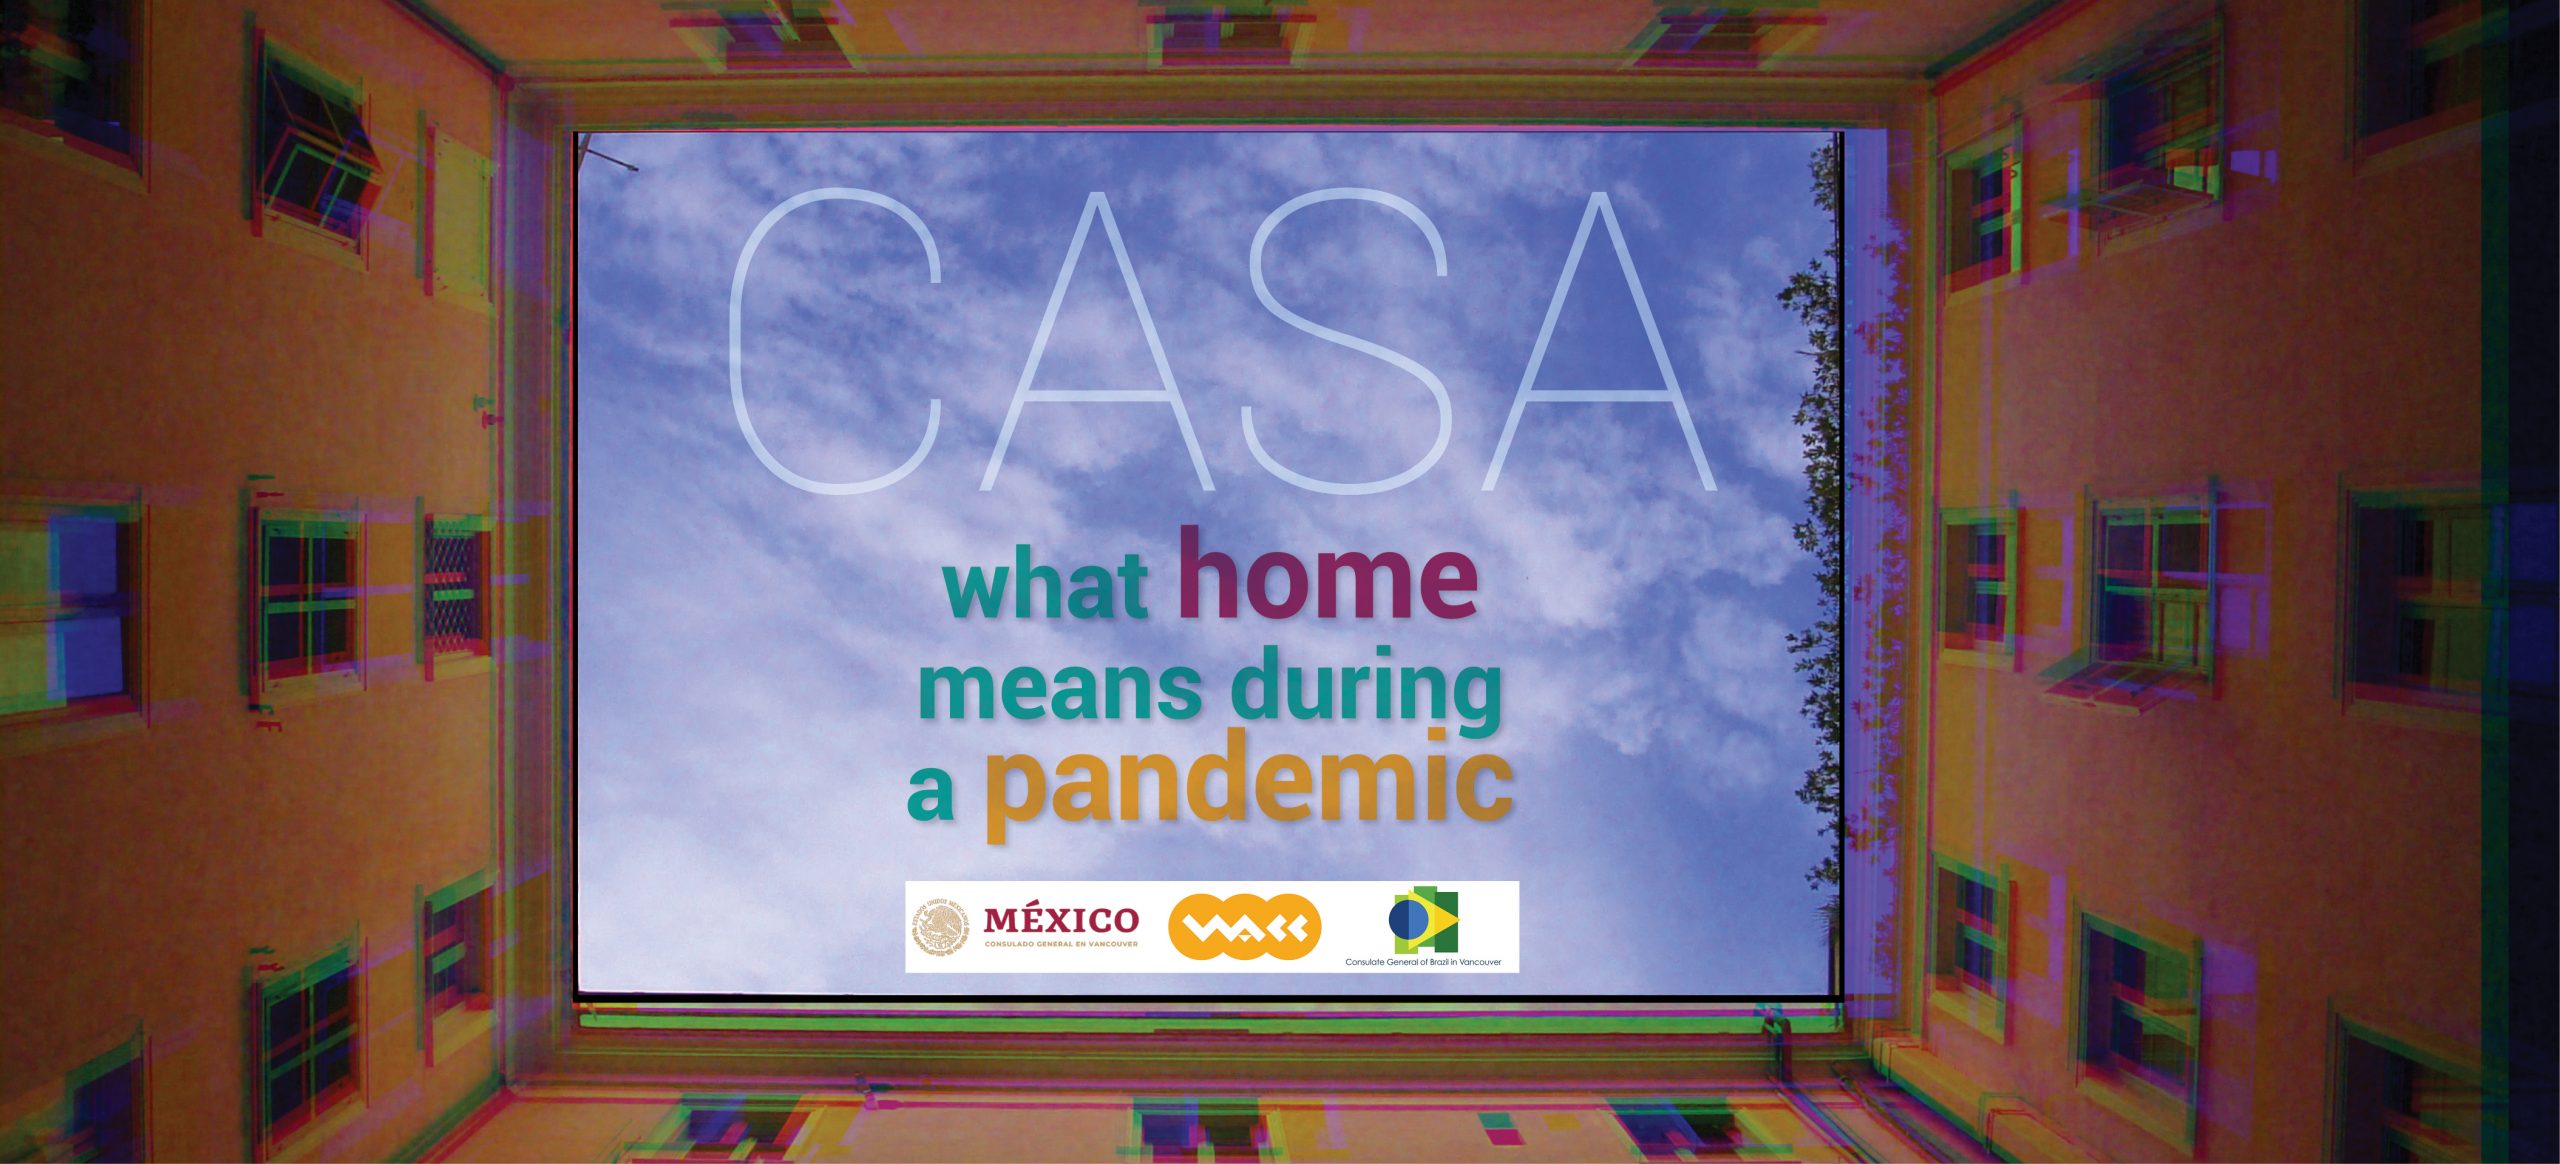 CASA | ¿Qué simboliza un hogar durante una pandemia? – RCI | Español